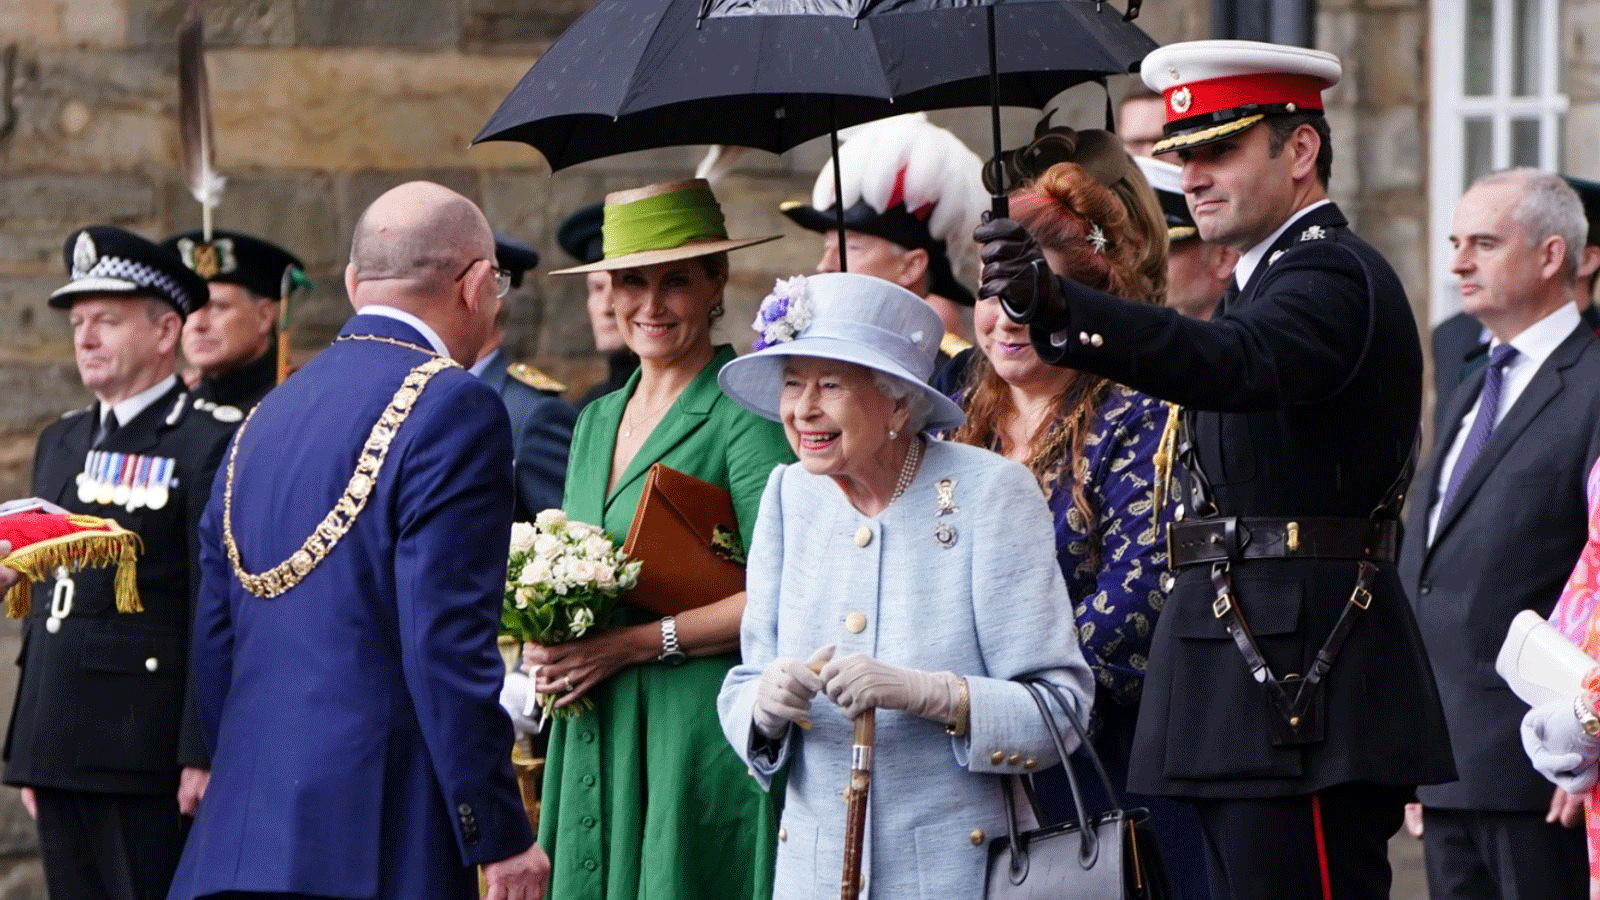 ملكة بريطنيا في حفل المفاتيح في قصر هوليرود في ادنبره